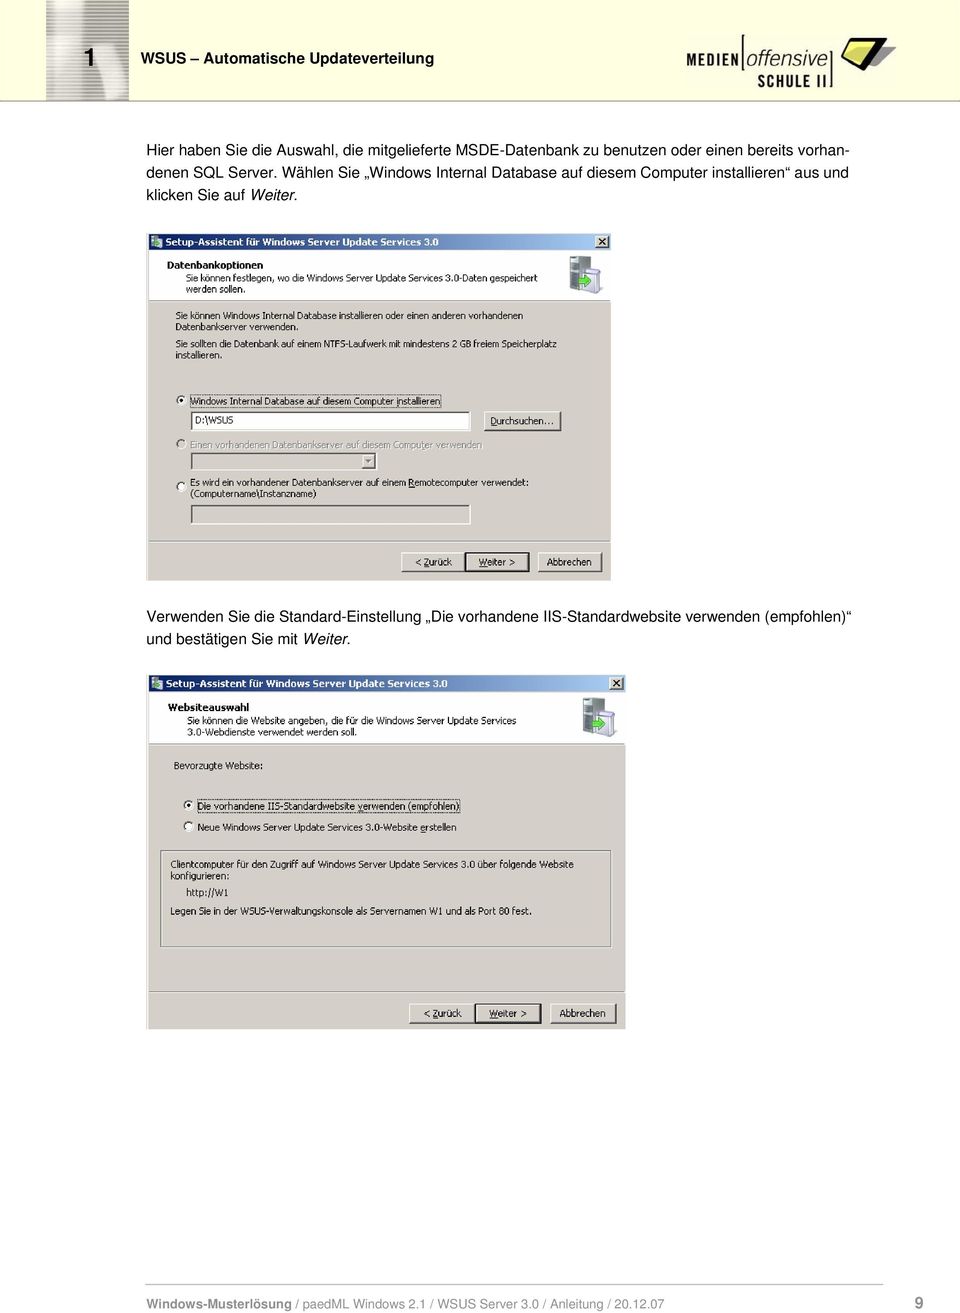 Wählen Sie Windows Internal Database auf diesem Computer installieren aus und klicken Sie auf Weiter.